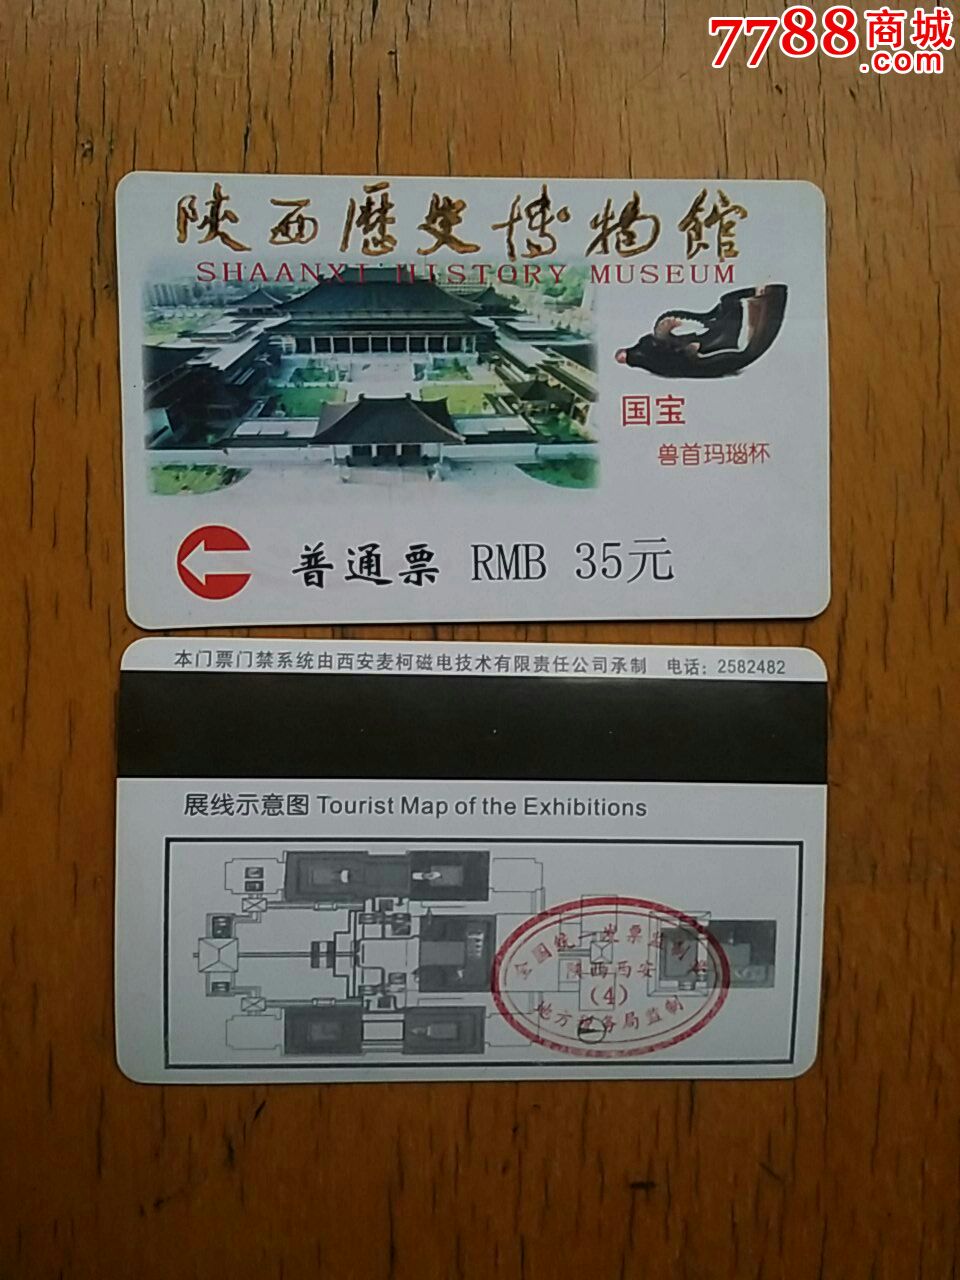 陕西历史博物馆磁卡门票-价格:5元-se2466608